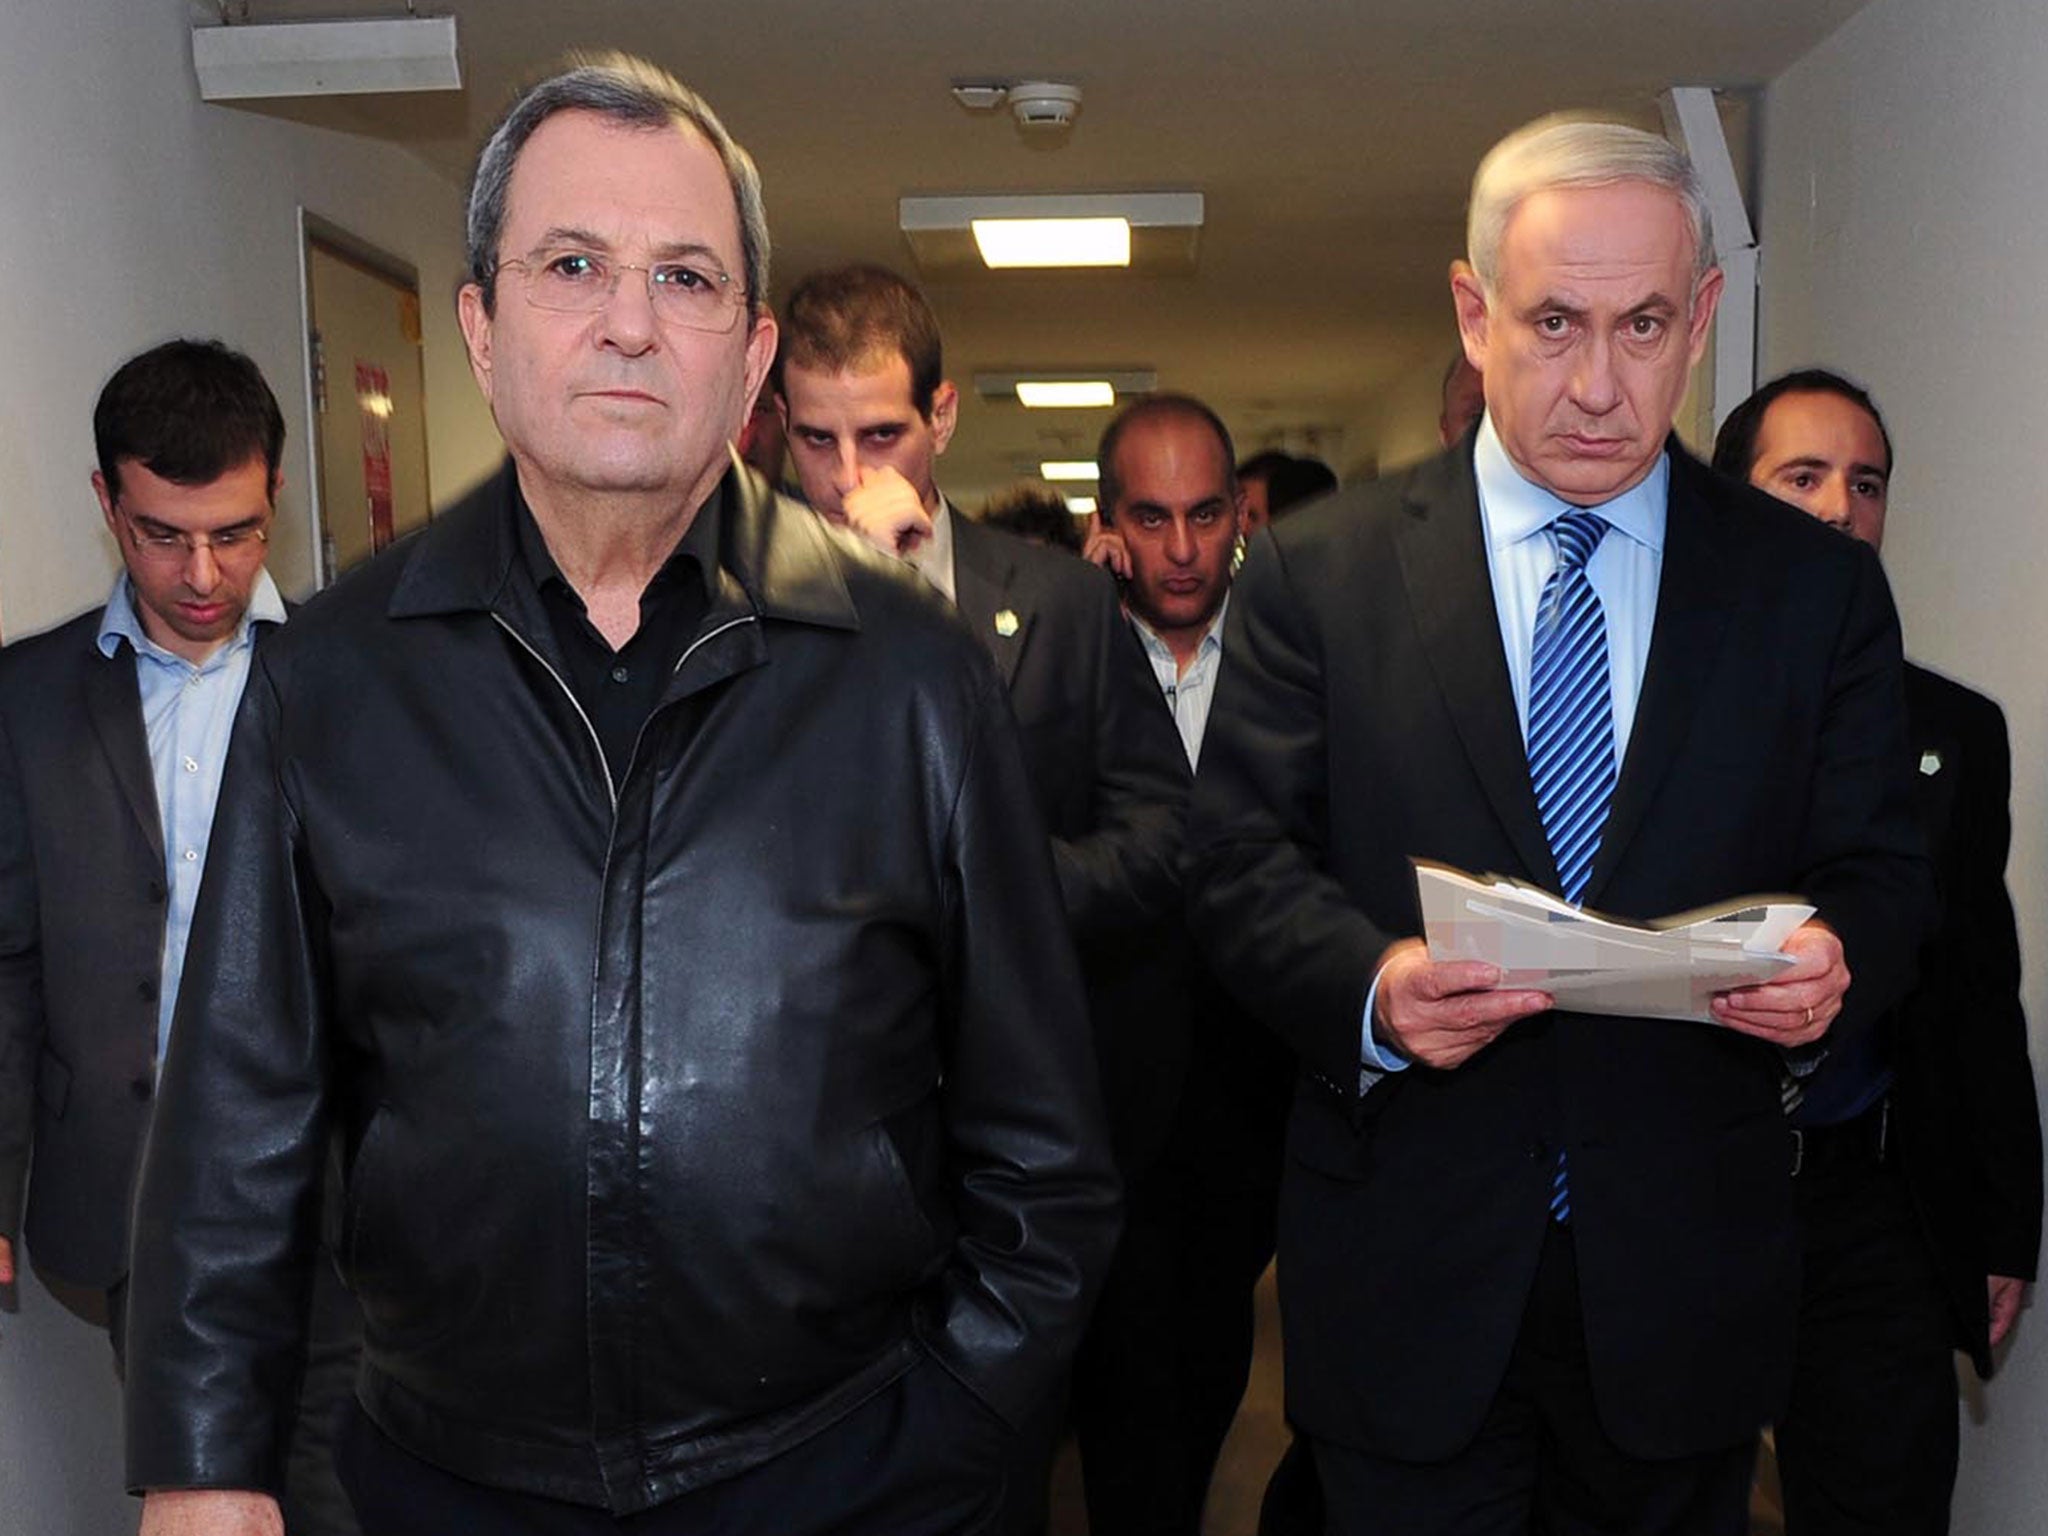 Israeli Prime Minister Benjamin Netanyahu and the then defence minister Ehud Barak on November 14 2012 in Kirya, Israel